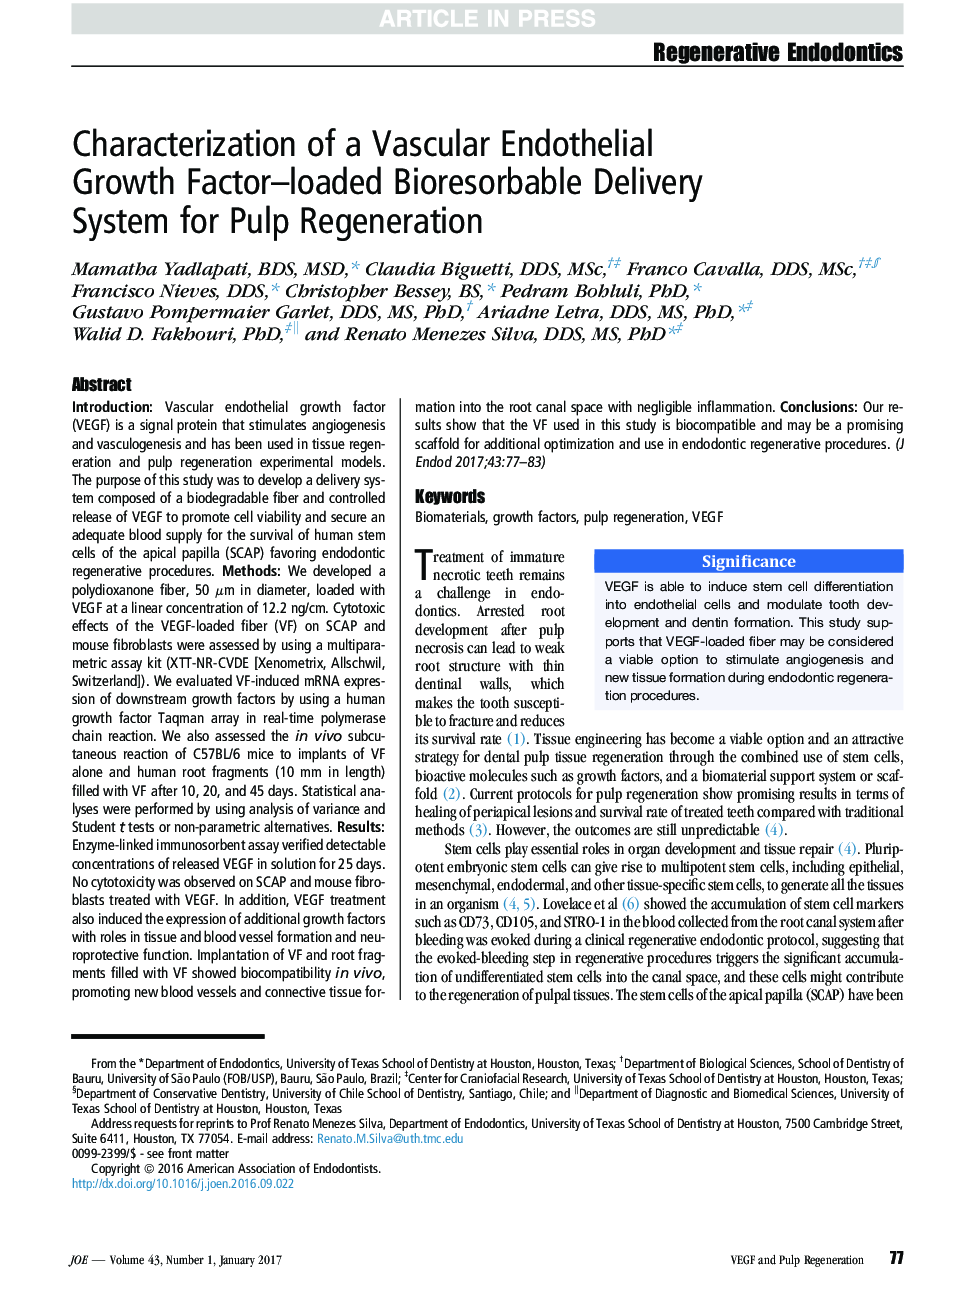 تشخیص یک سیستم تحویل بیوژنی قابل تحمل فاکتور رشد اندوتلیال عروقی برای بازسازی پالپ 